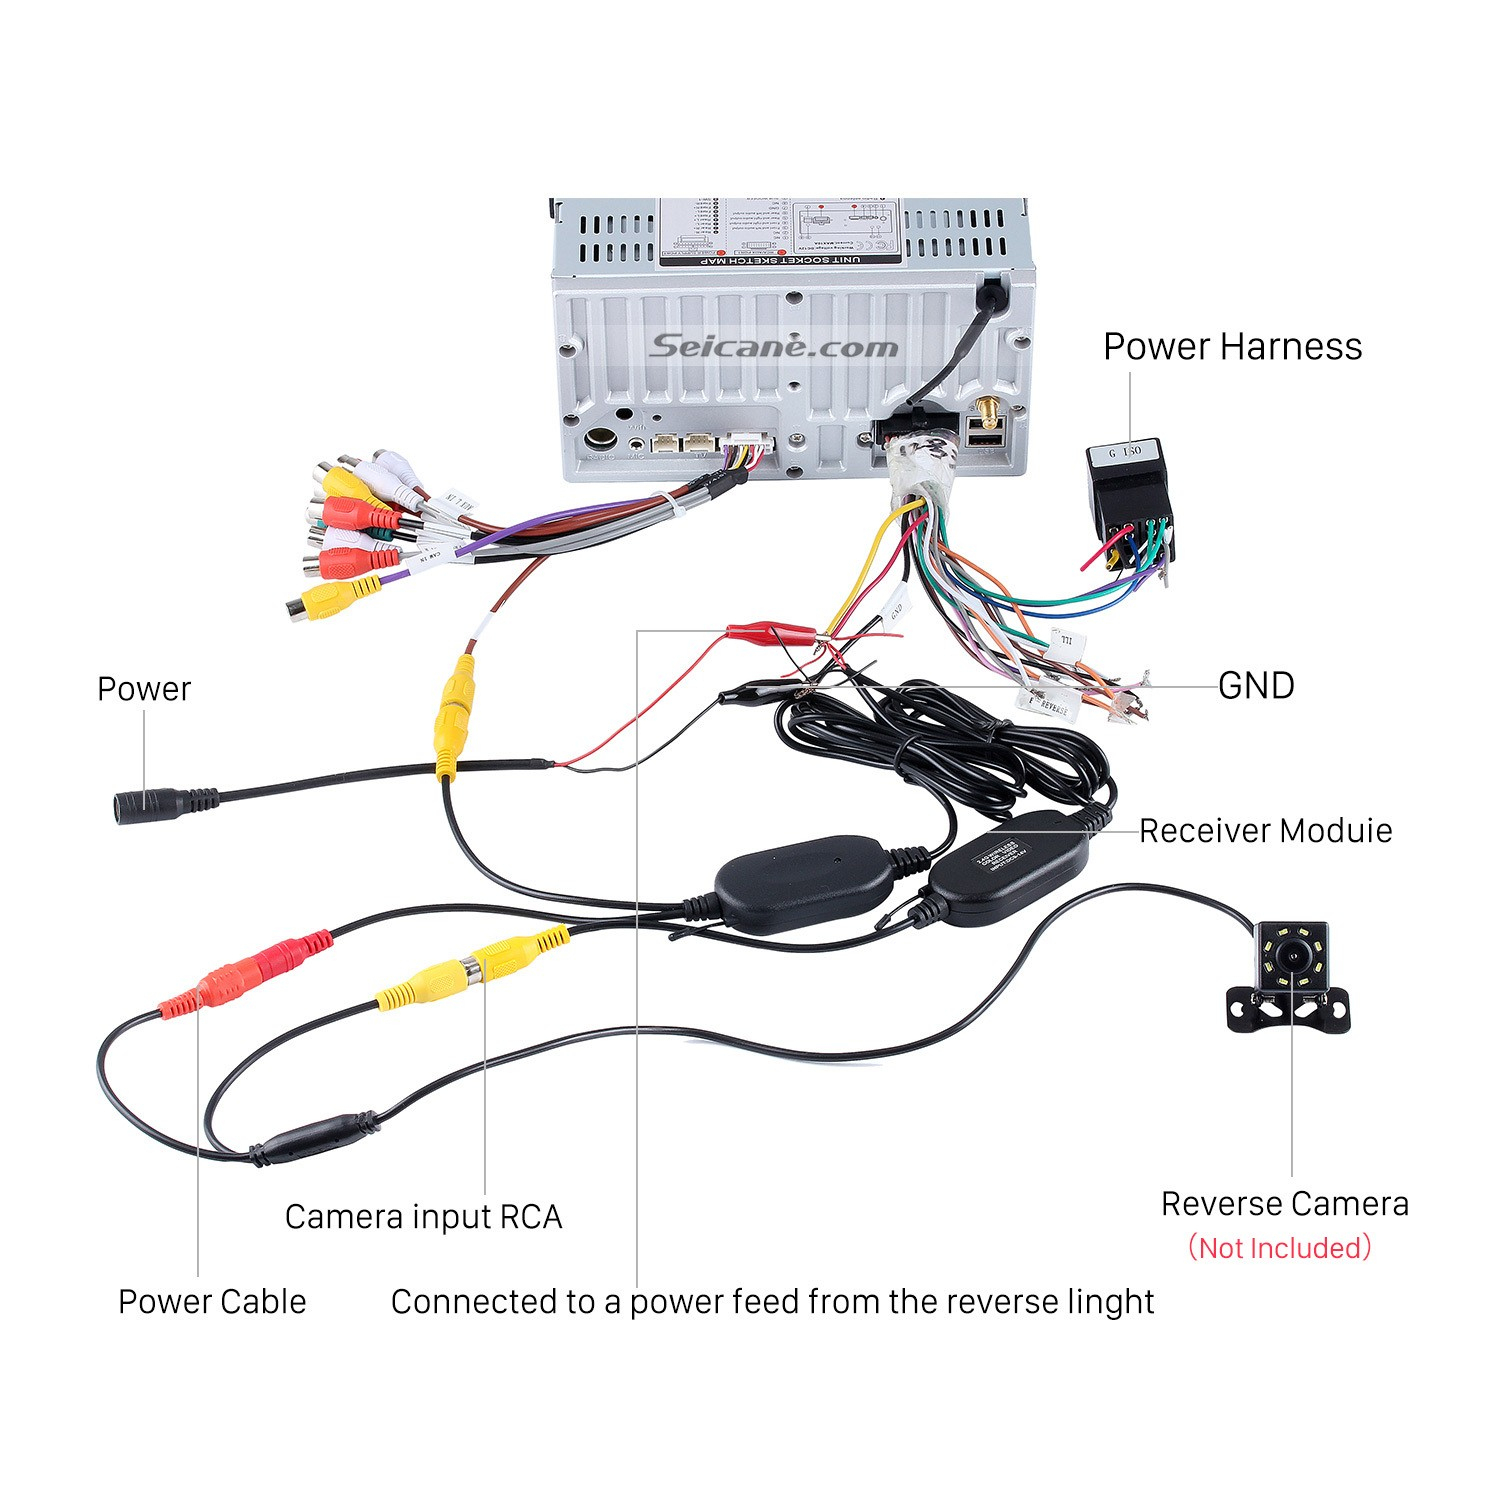 Backup Camera Wiring Diagram | Wiring Diagram - Backup Camera Wiring Diagram